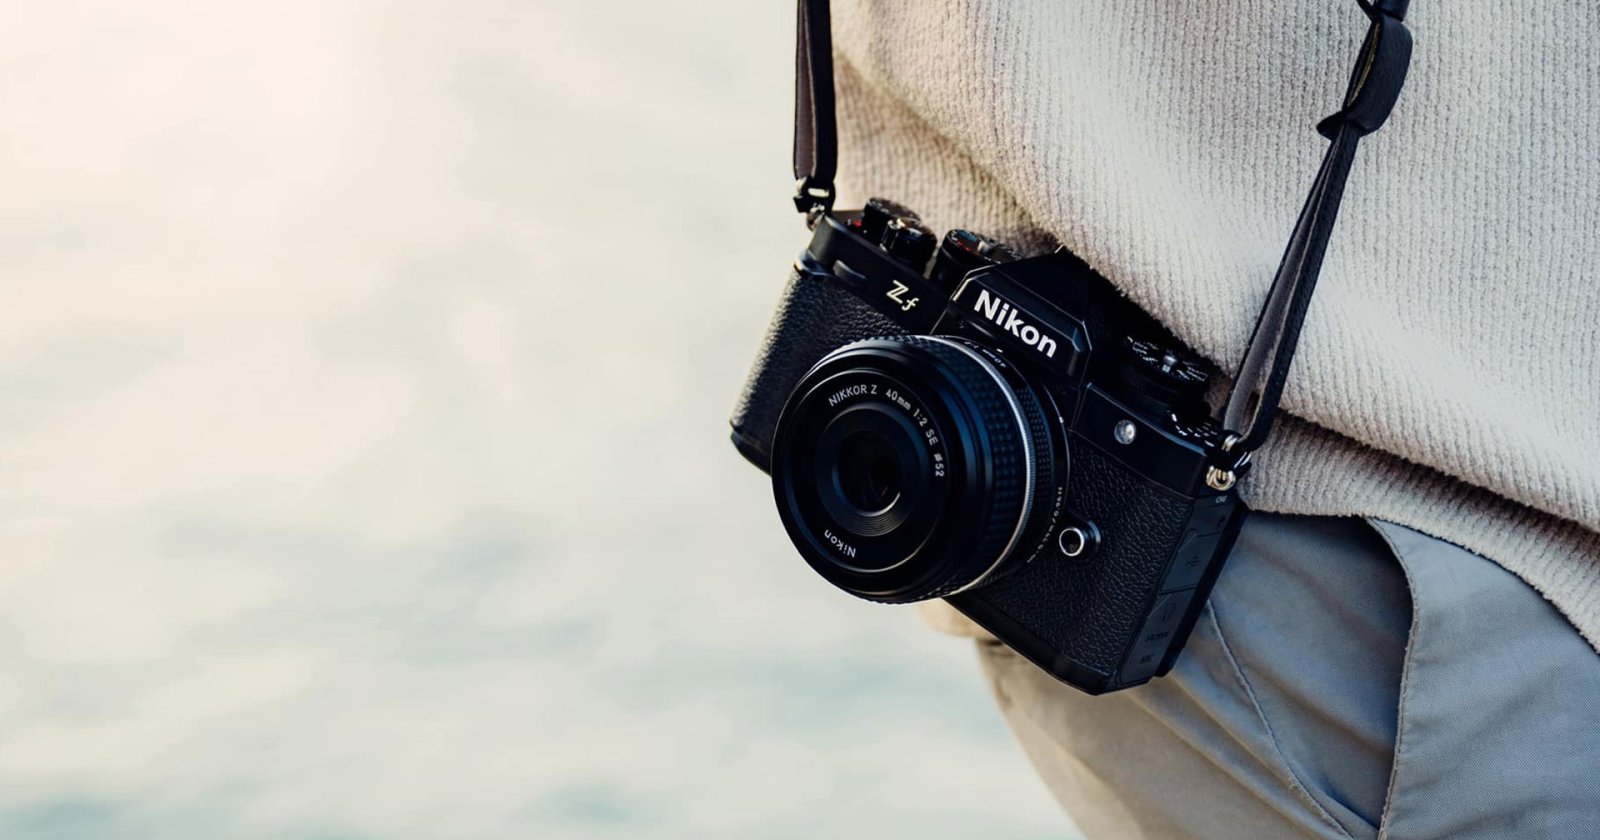 เปิดตัว Nikon Zf กล้องฟูลเฟรมมิเรอร์เลสทรง Retro ผสานดีไซน์ยุคฟิล์มเข้ากับเทคโนโลยีสมัยใหม่!